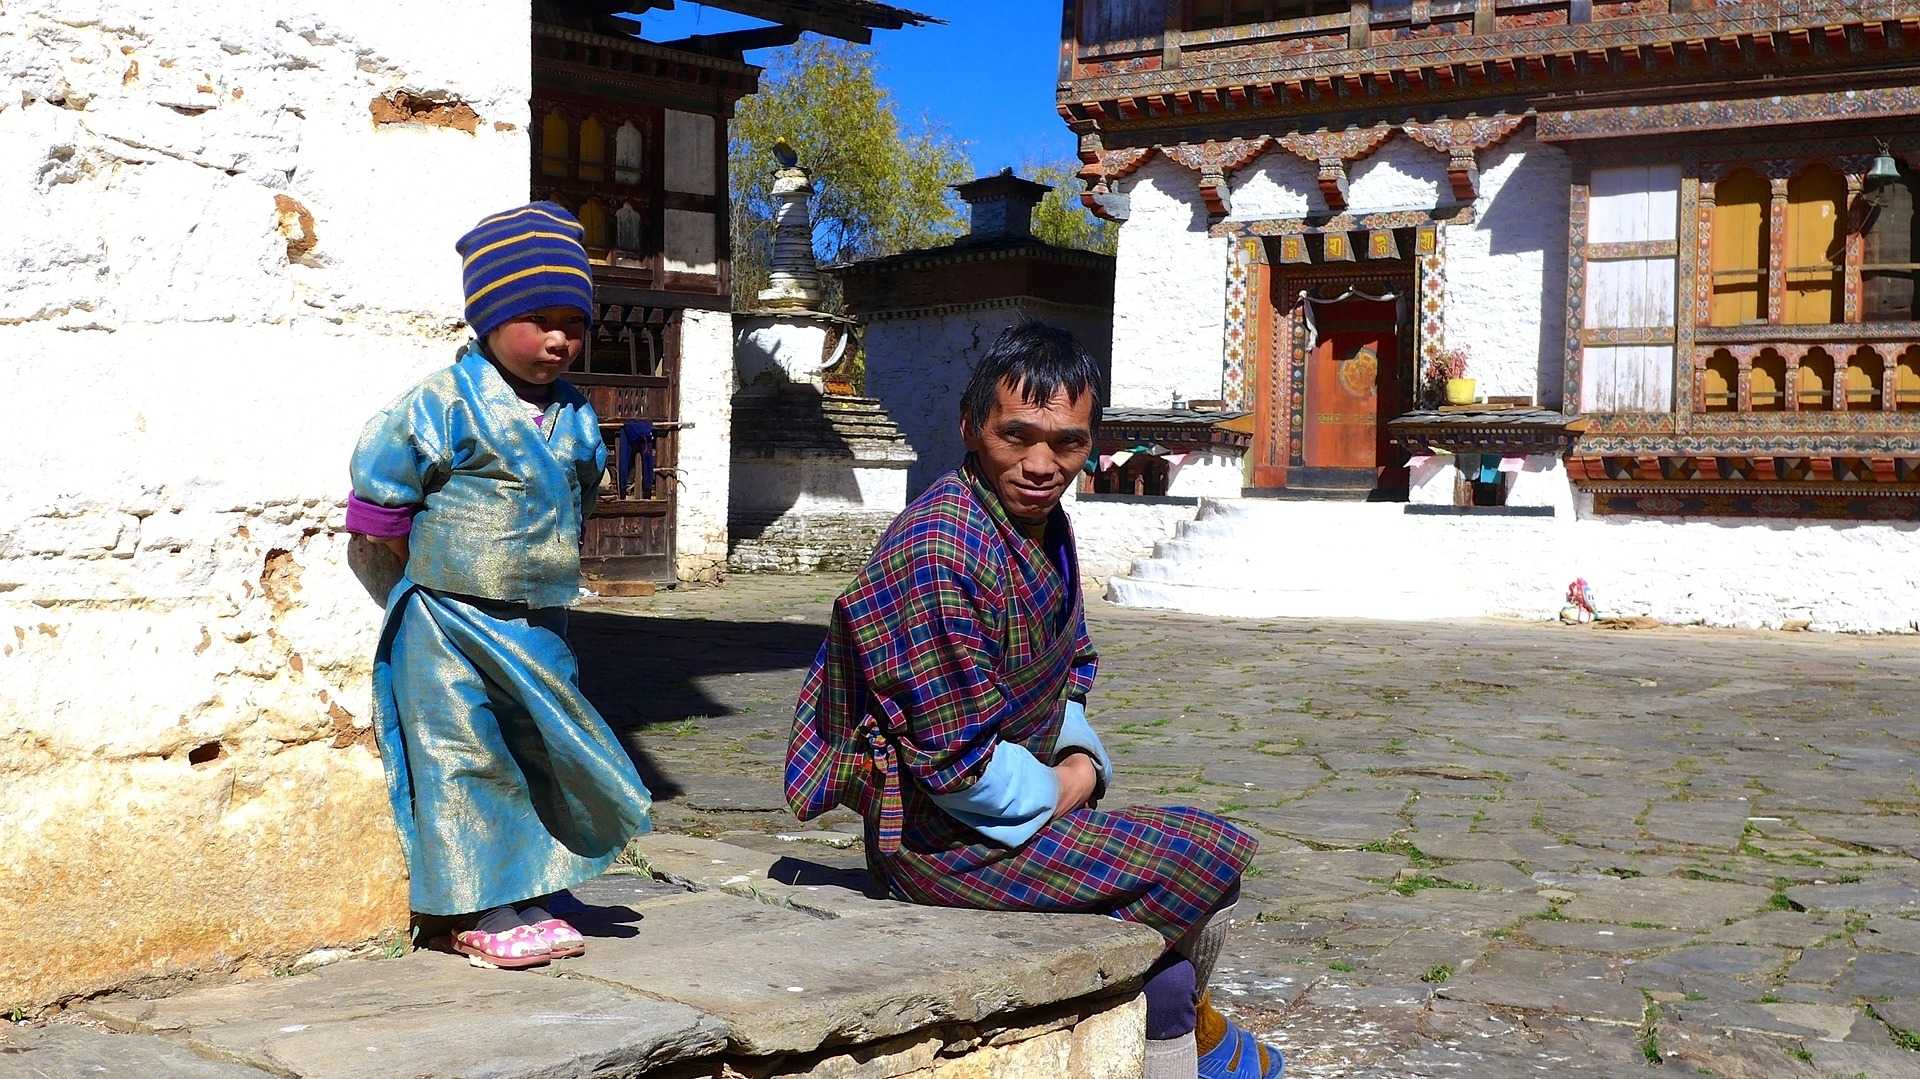 Vater und Kind in Bhutan vor ärmlichem Haus als Symbol für bescheidenen Lebensstil